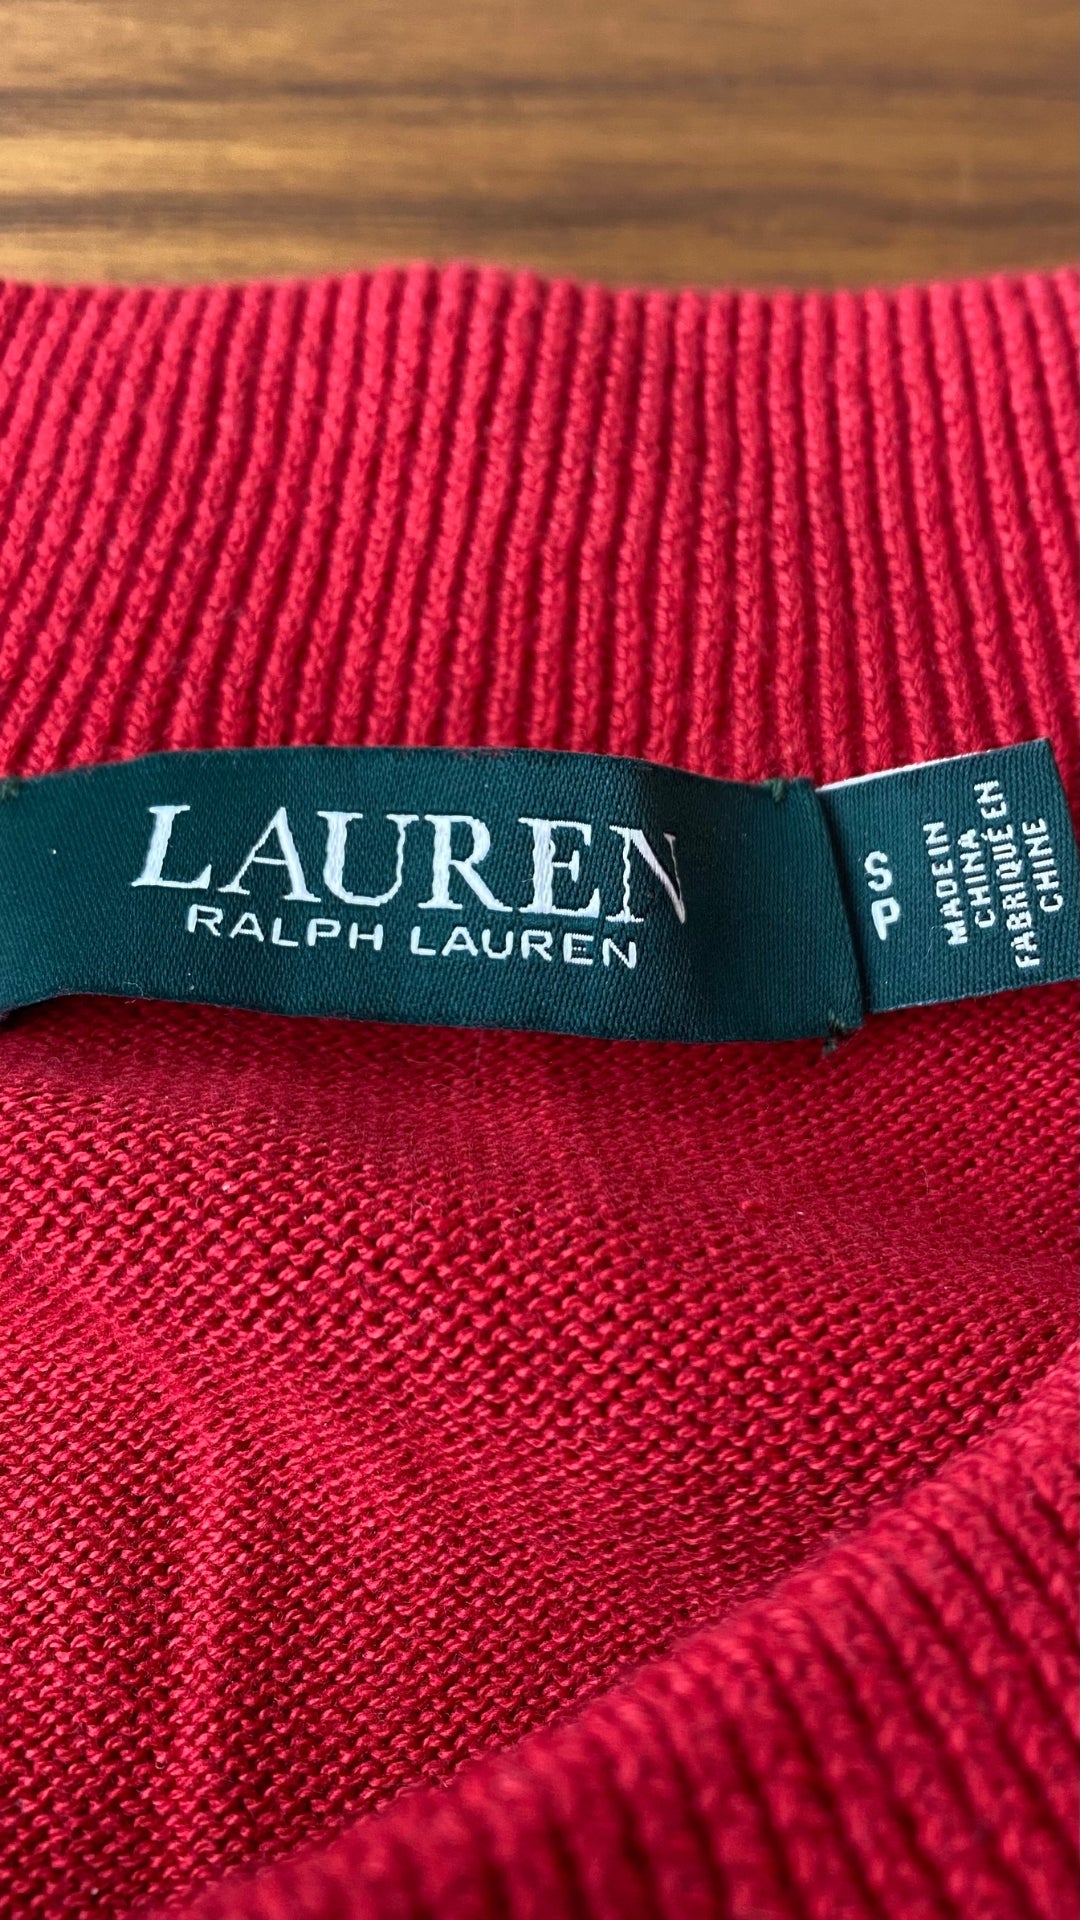 Chandail en tricot rouge col bateau Lauren Ralph Lauren, taille small. Vue de l'étiquette de marque et taille.